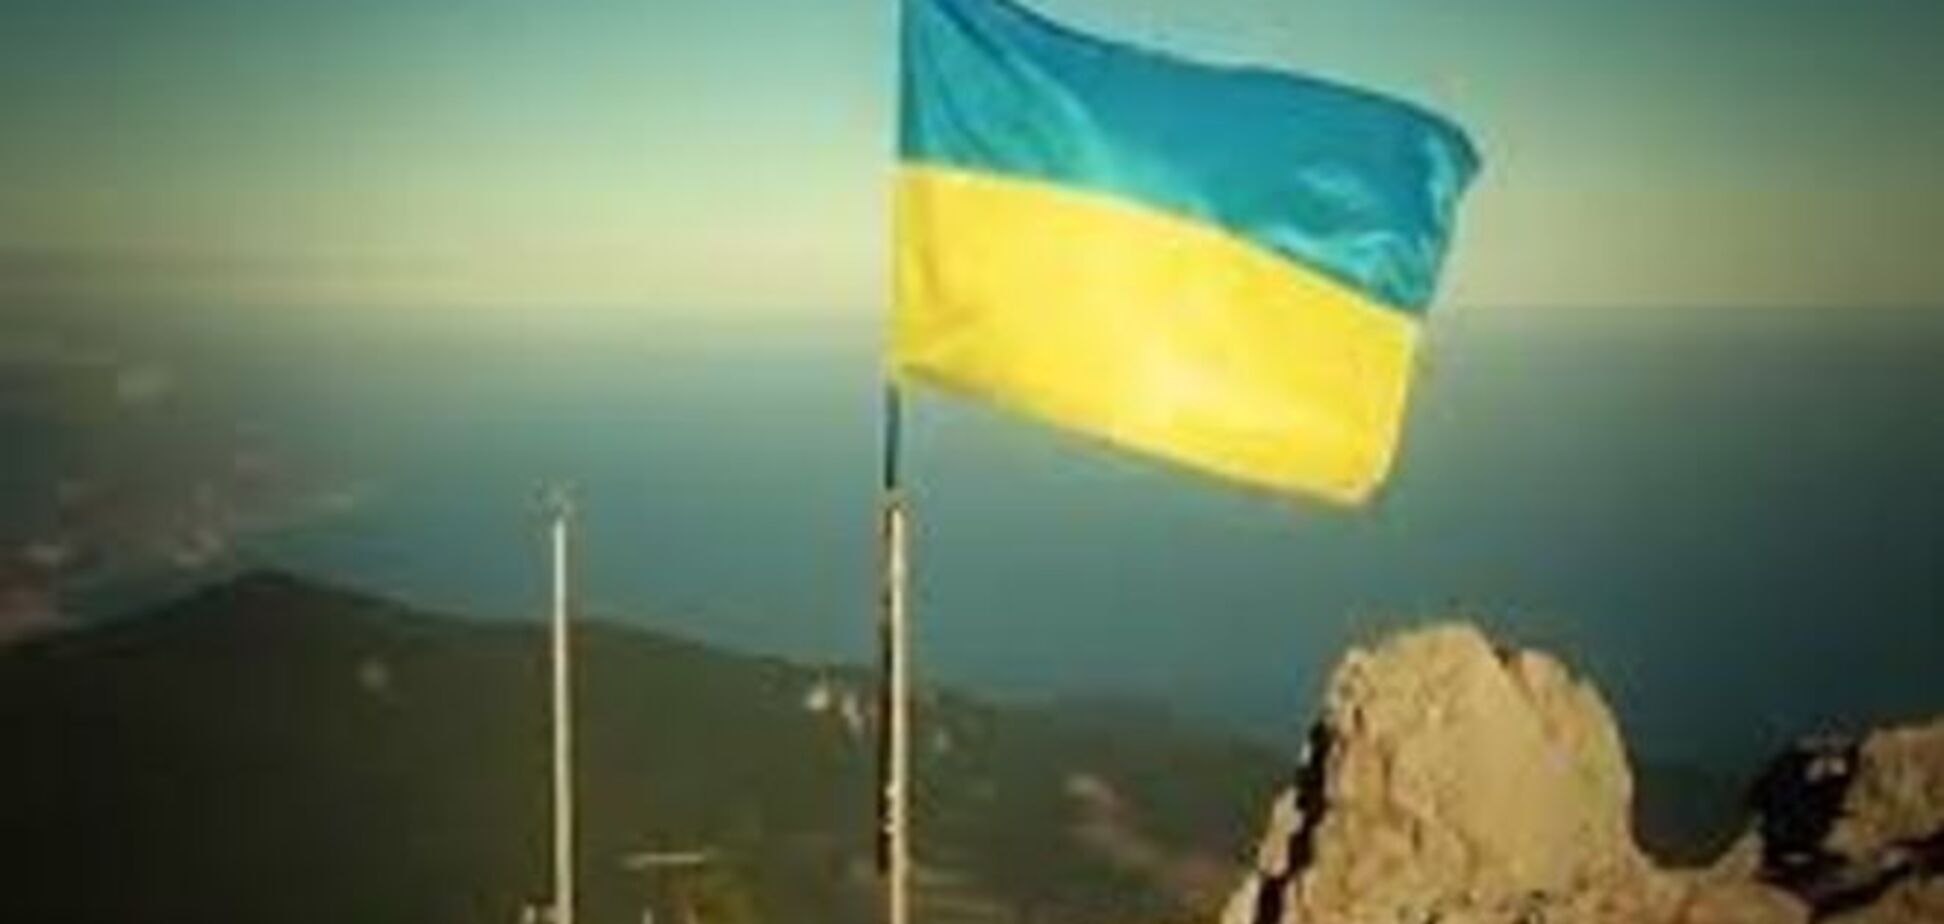 У Криму за українську символіку окупанти будуть застосовувати силу